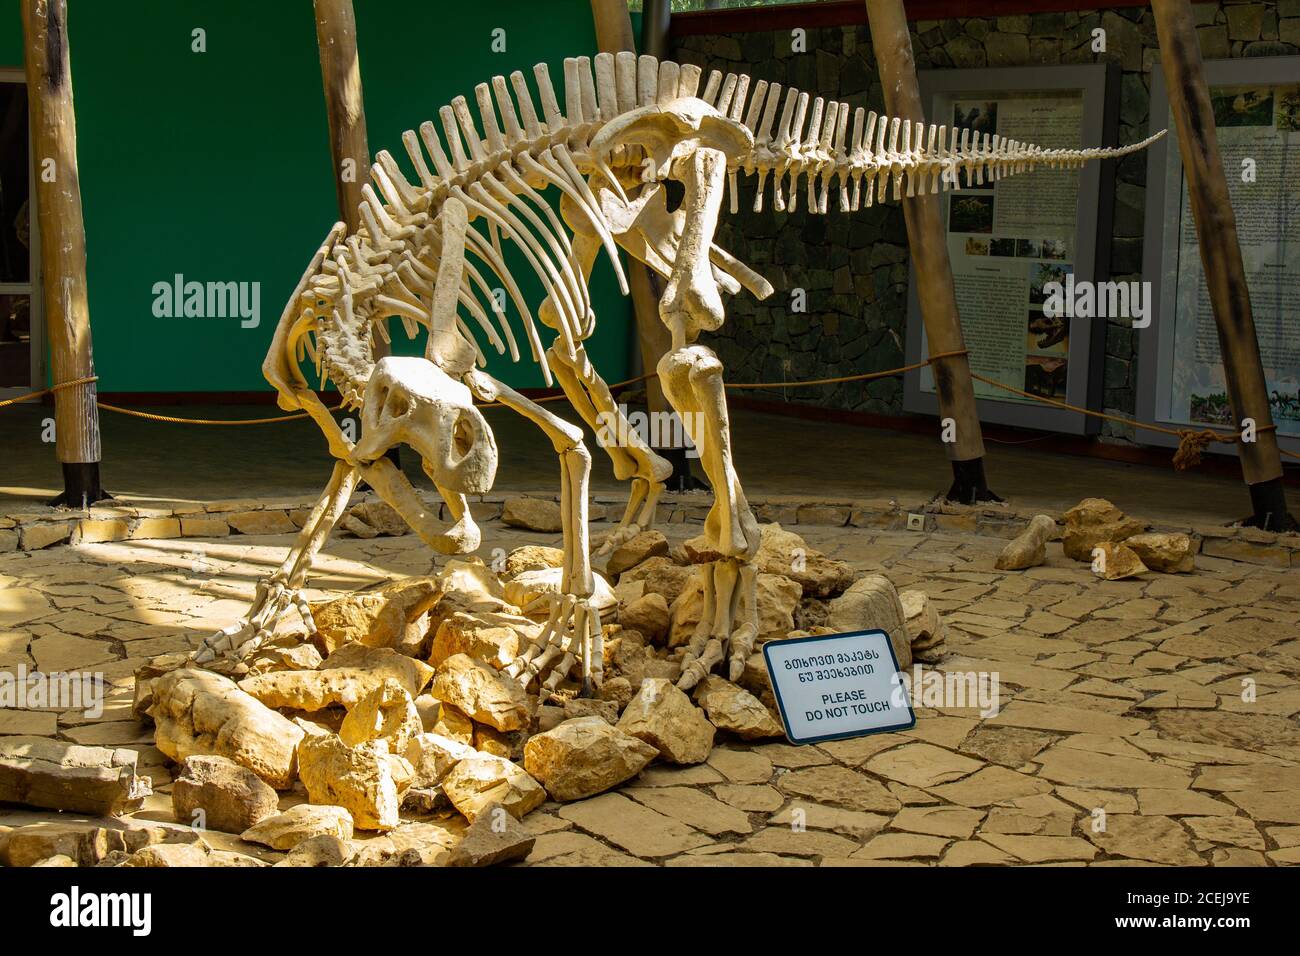 TSKALTUBO, GEORGIA - 19 MARZO 2018: Scheletro di dinosauro, situato nella riserva naturale di Sataplia vicino alla città di Kutaisi, Georgia. Educare all'estinto Foto Stock